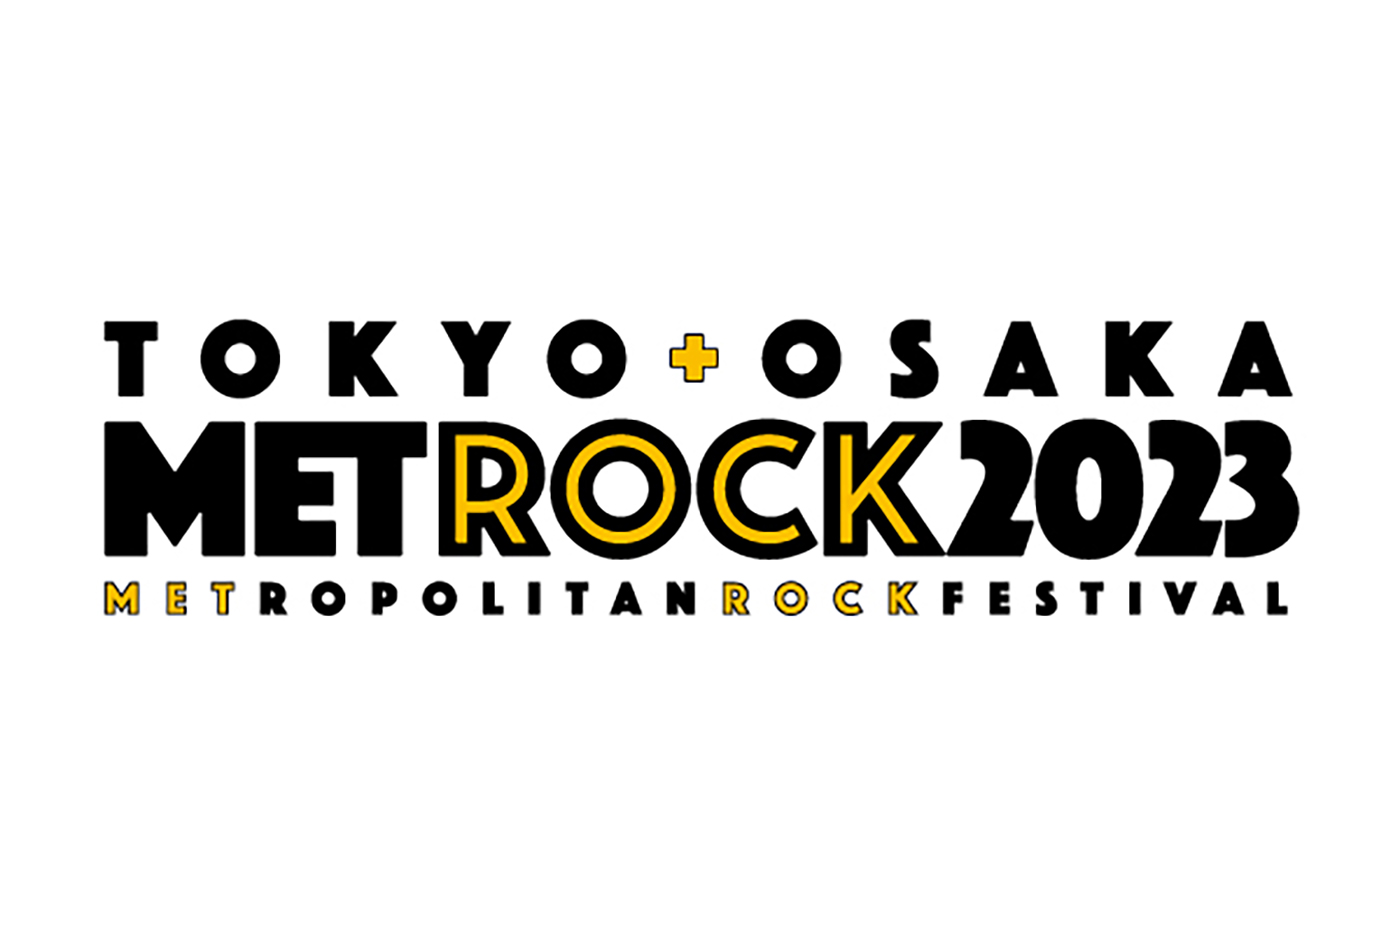 都市型野外ロックフェス『METROCK 2023』、エムオン!にて6月にテレビ独占放送